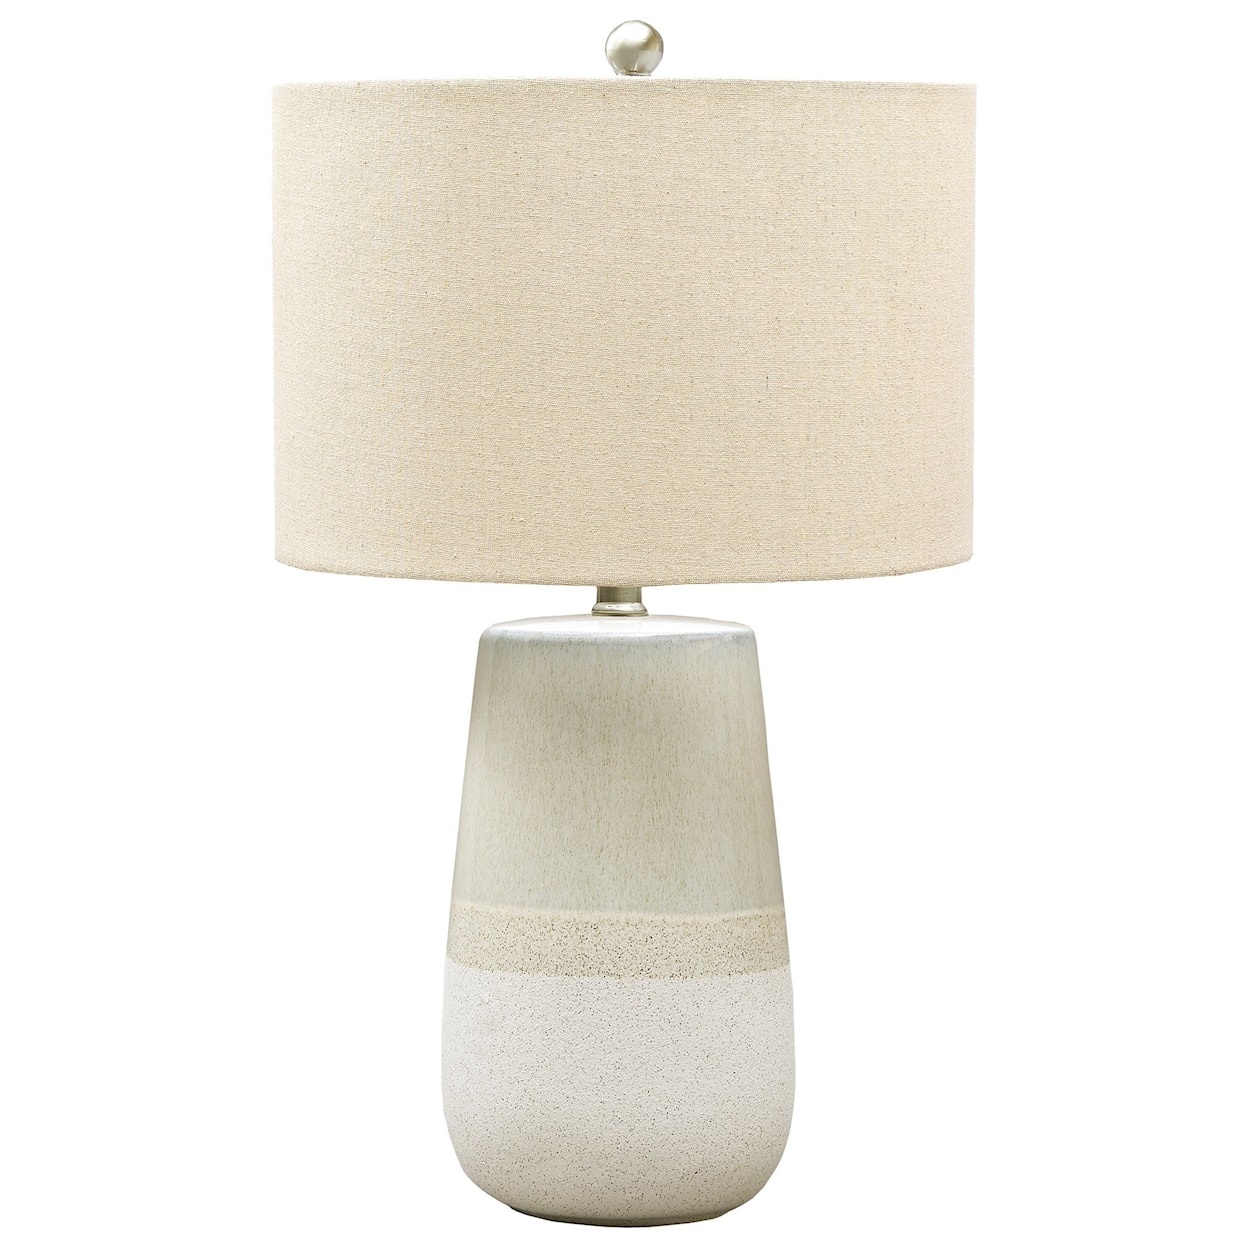 Ashley Signature Design Lamps - Casual Shavon Beige/White Ceramic Table Lamp